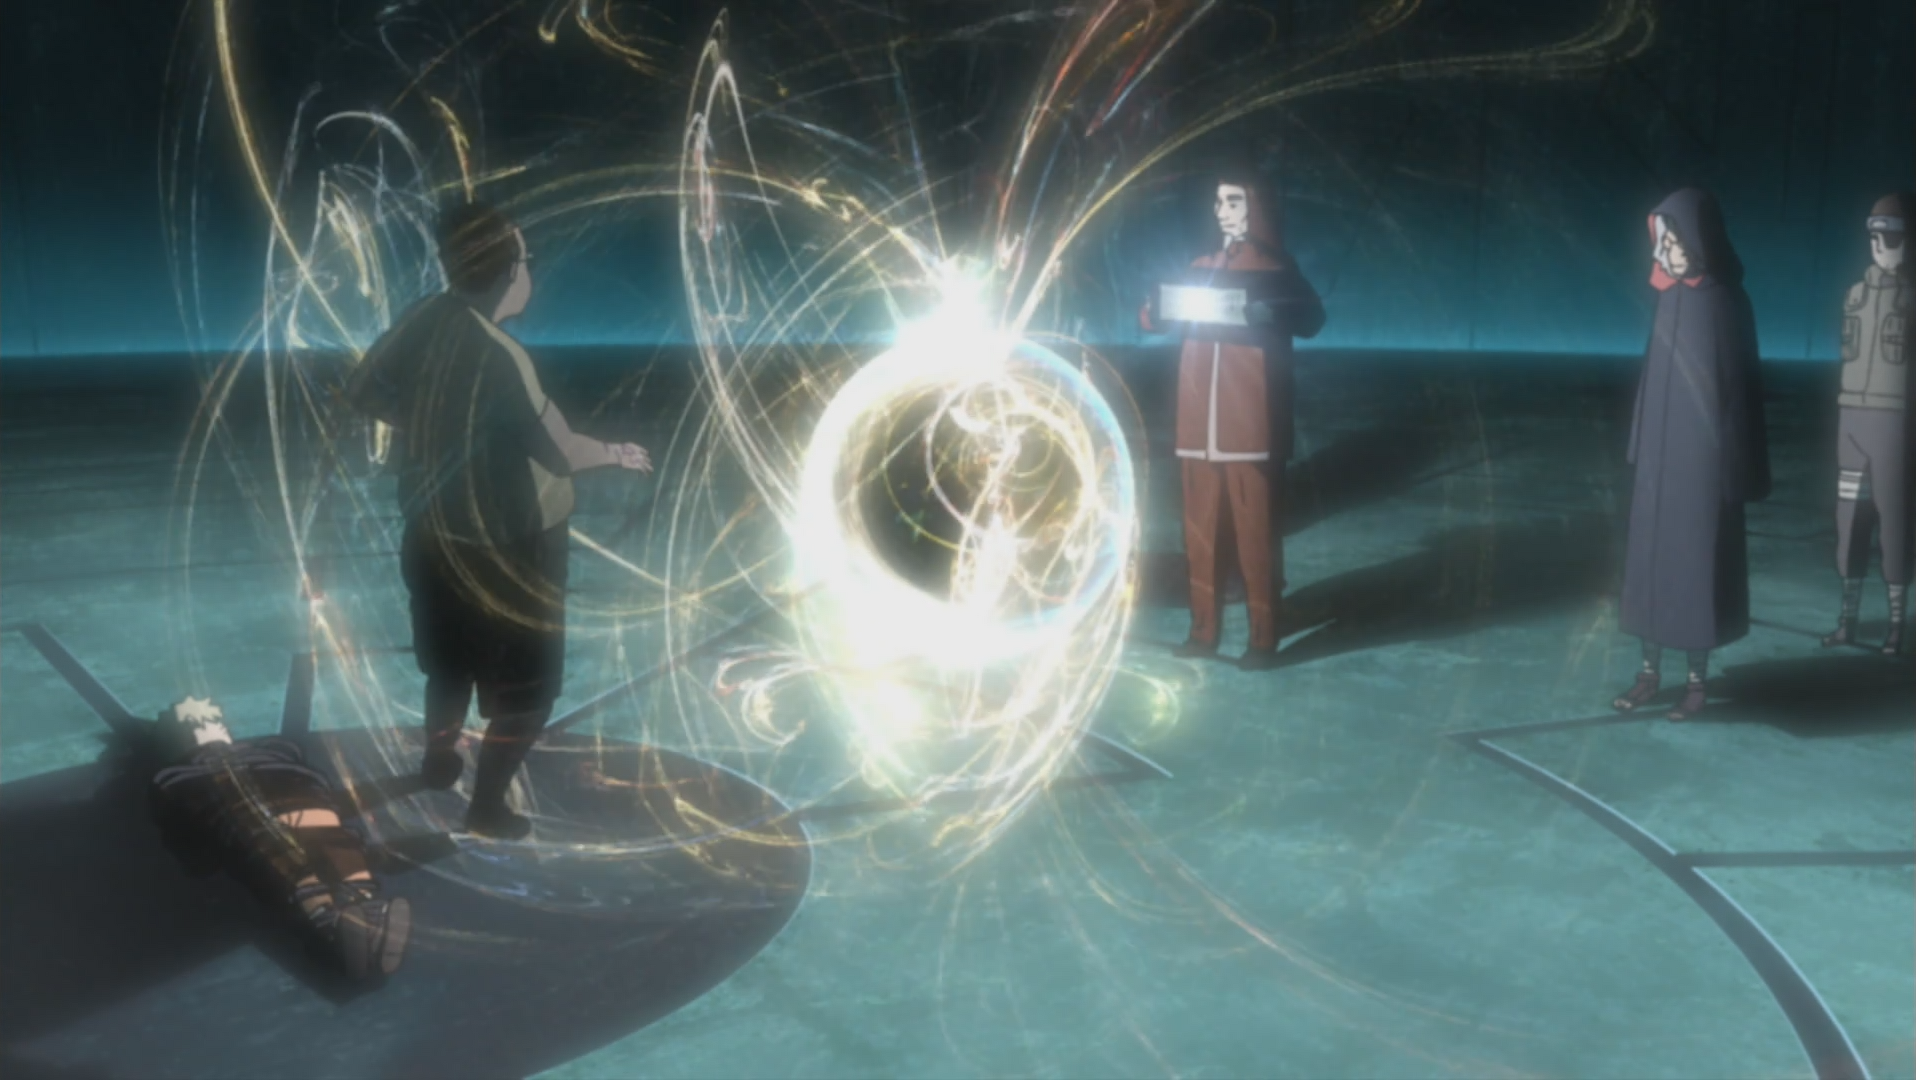 Naruto Shippuden - Episodio 290 - Chikara, episódio 1 Online - Animezeira